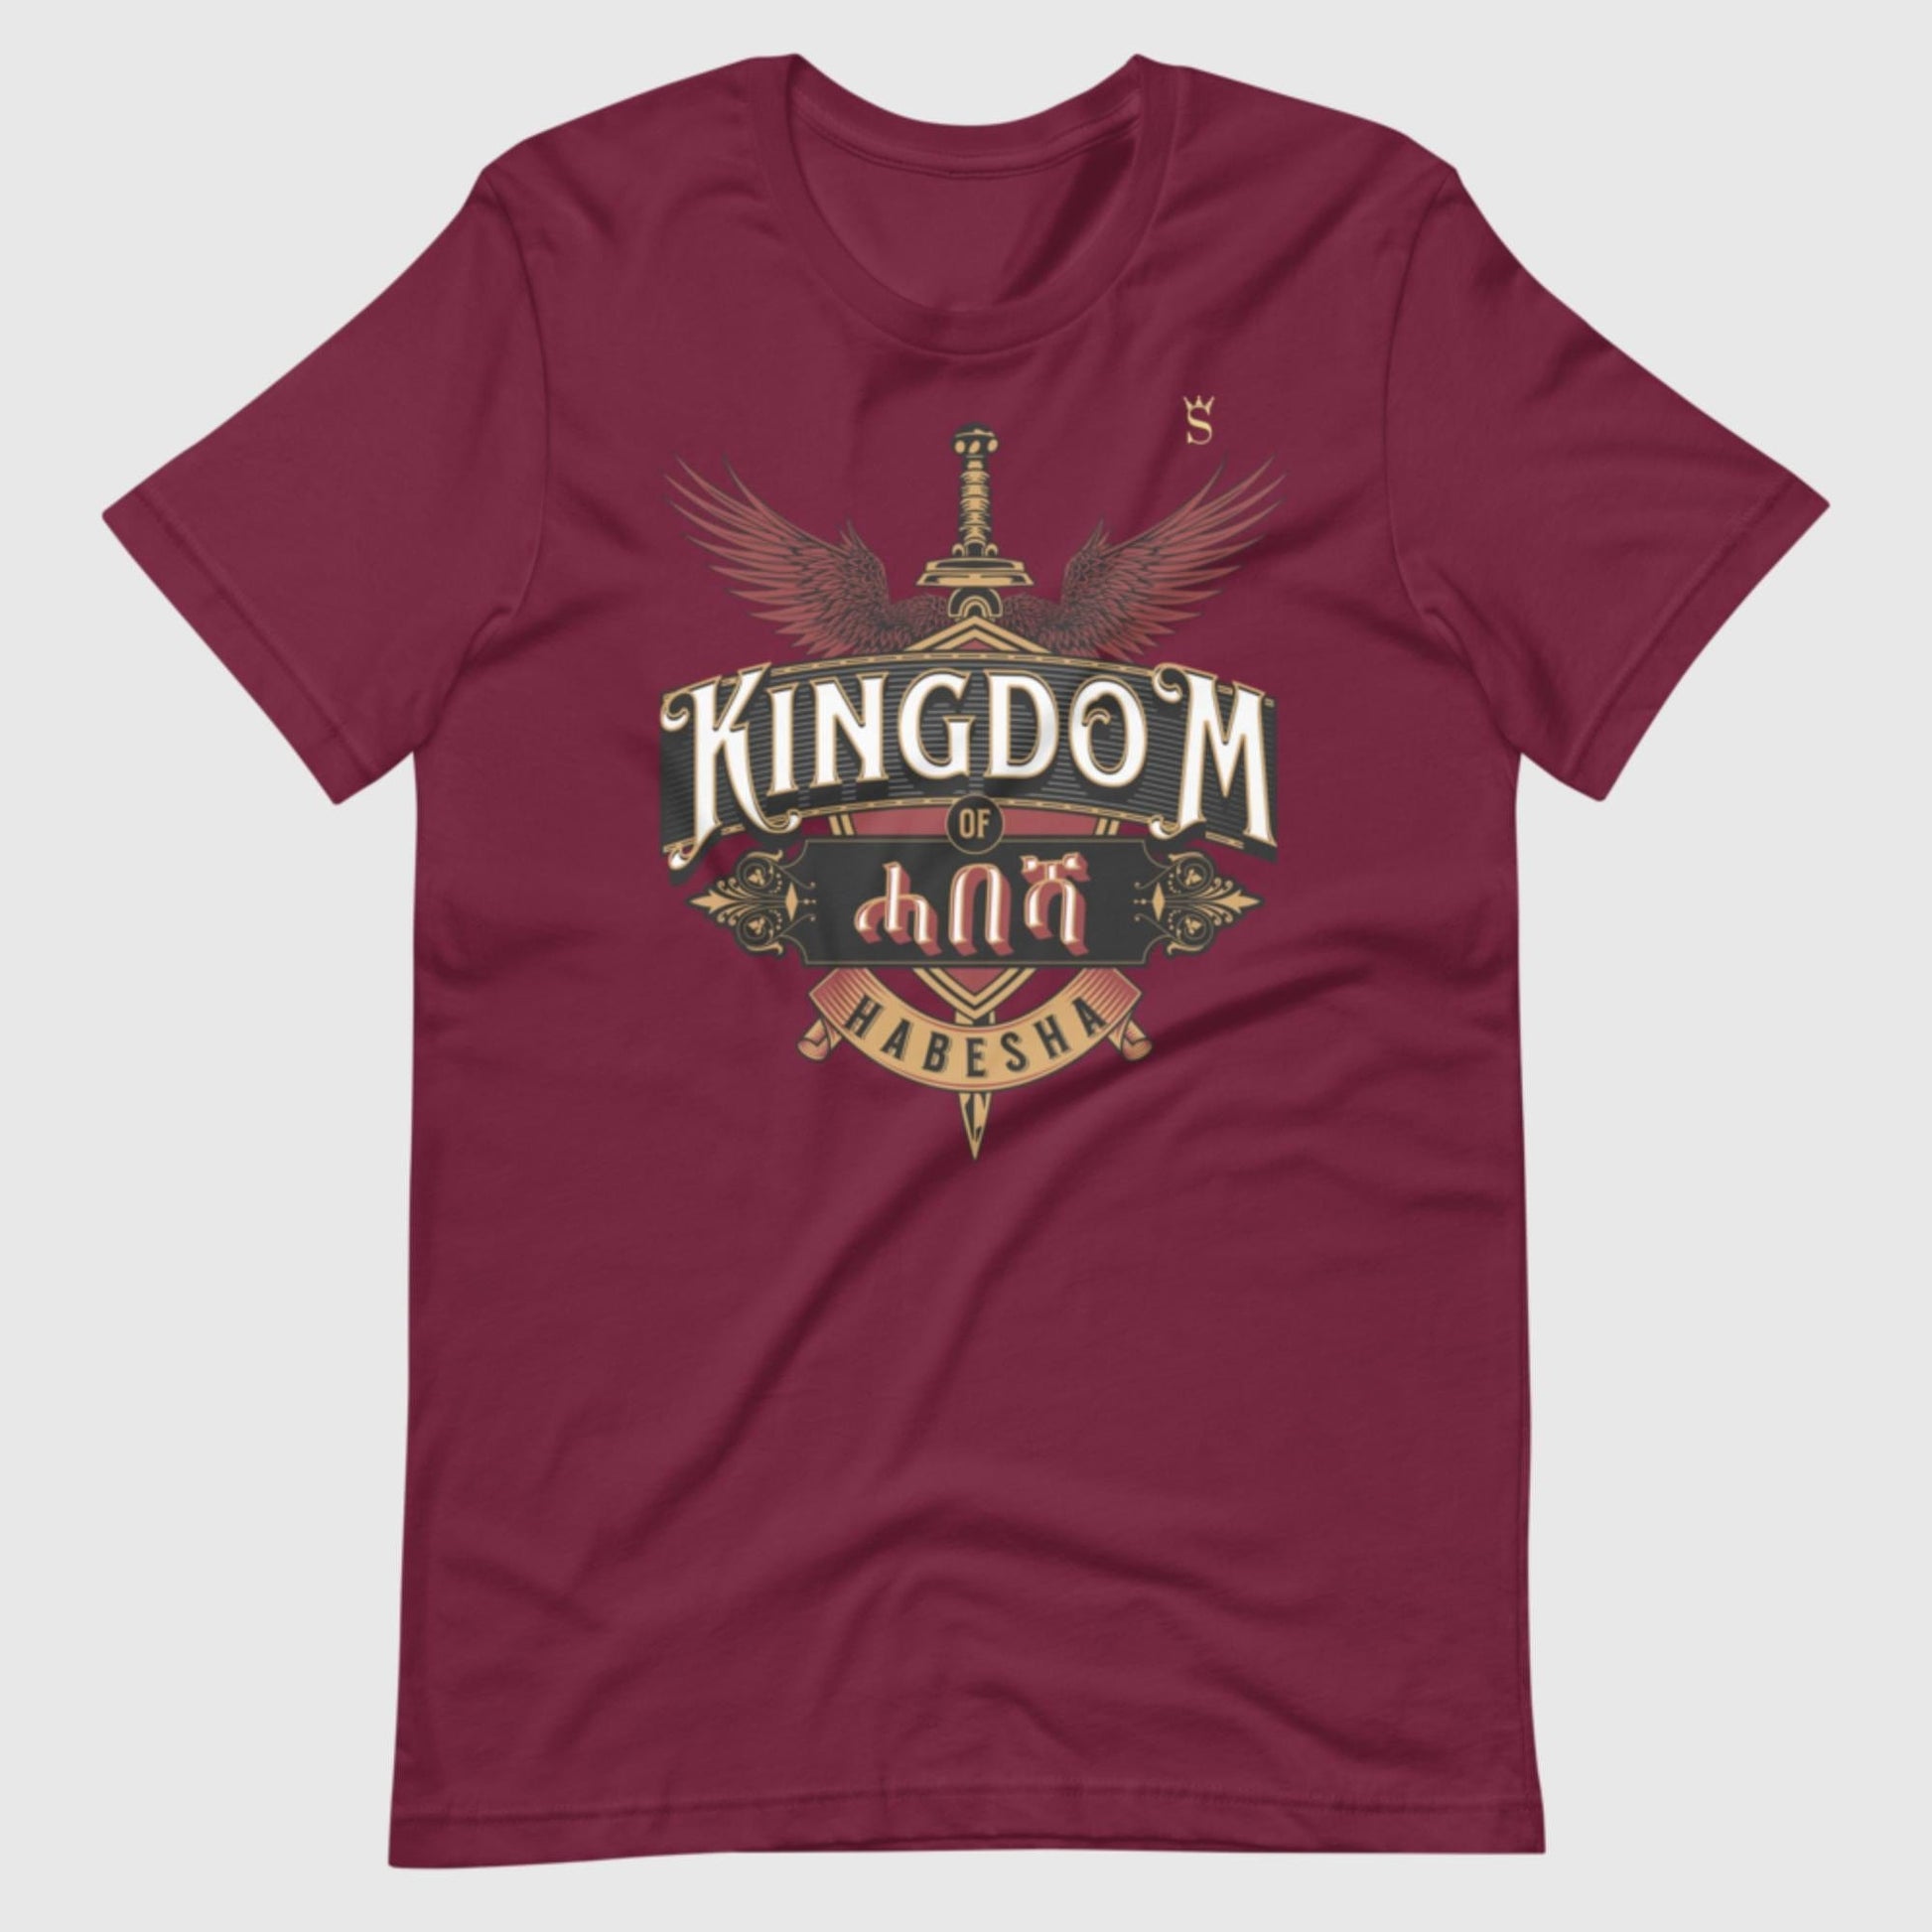 Kingdom of Habesha Unisex t-shirt